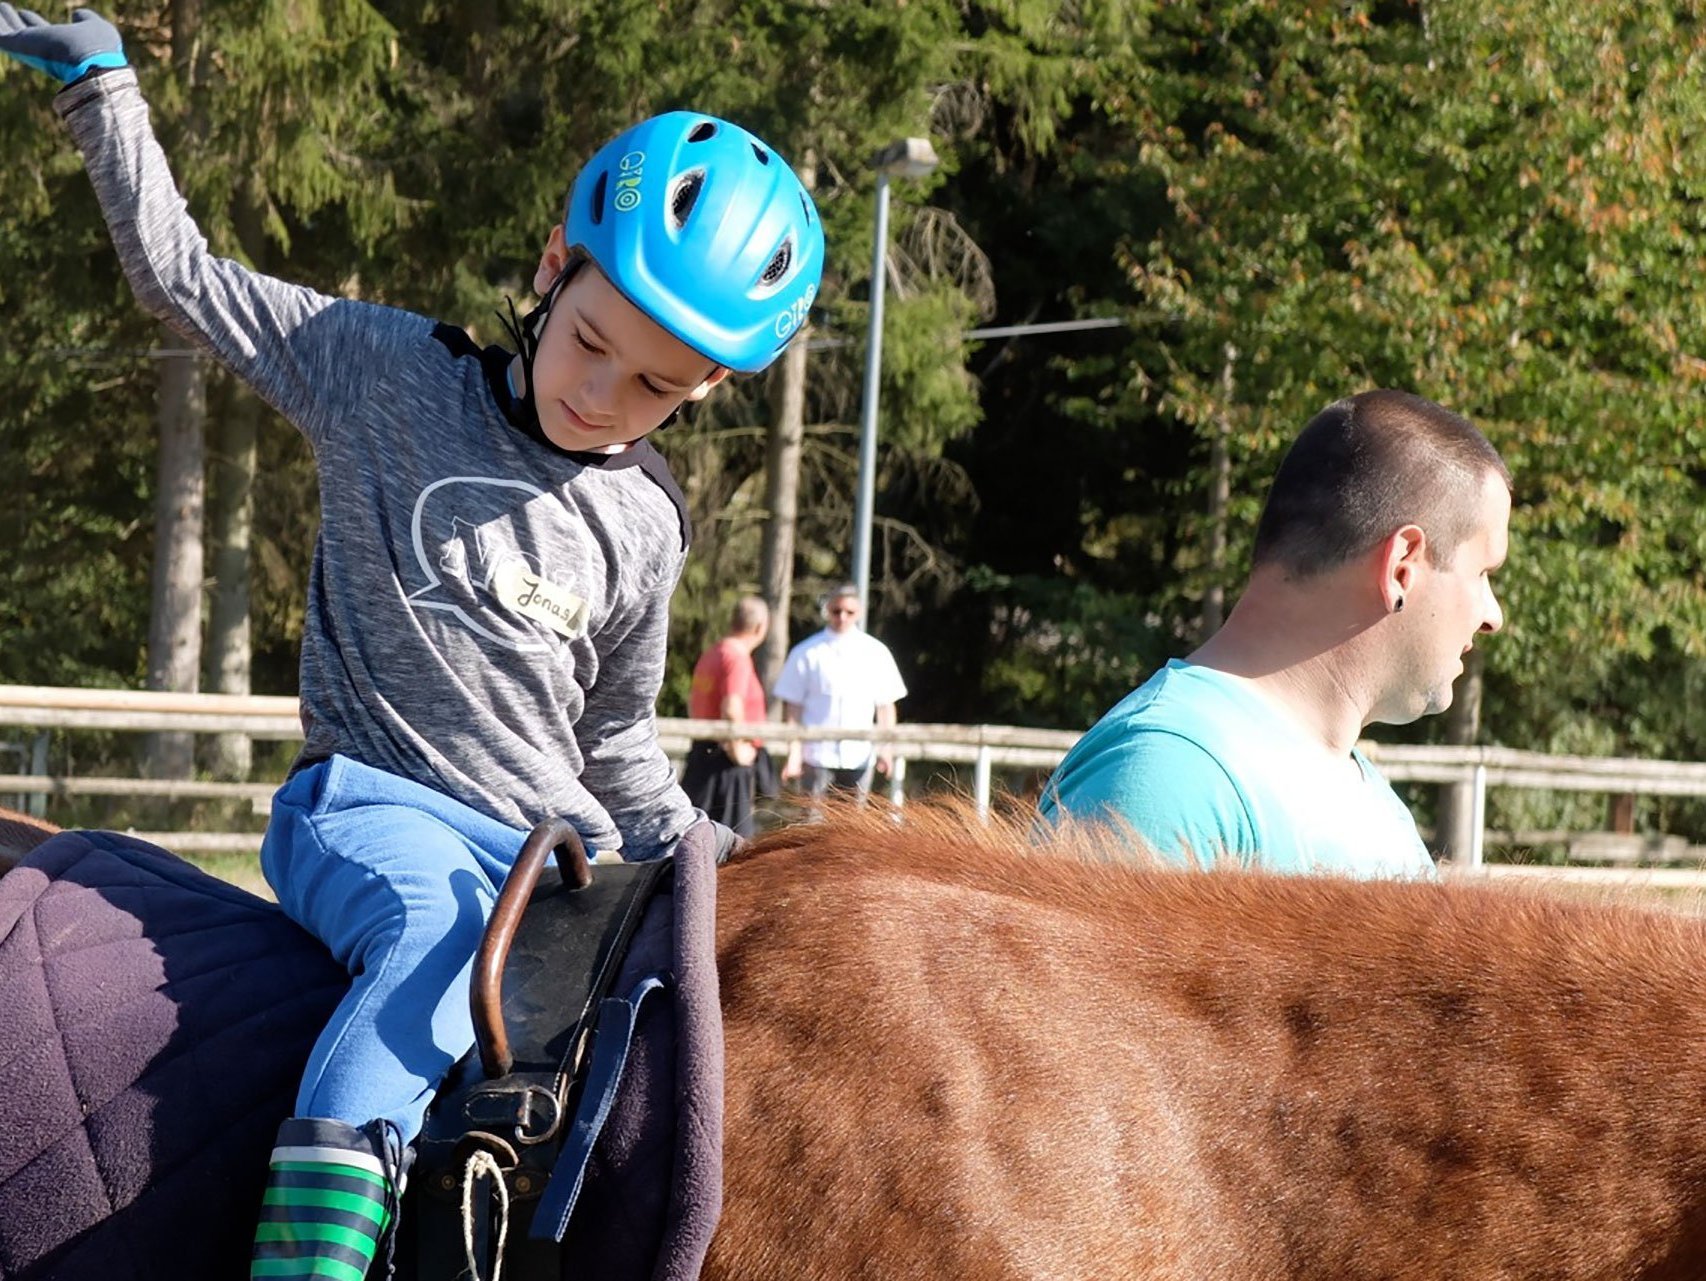 Ein Junge mit Fahrradhelm sitzt auf einem Pferd, das von einem Begleiter geführt wird